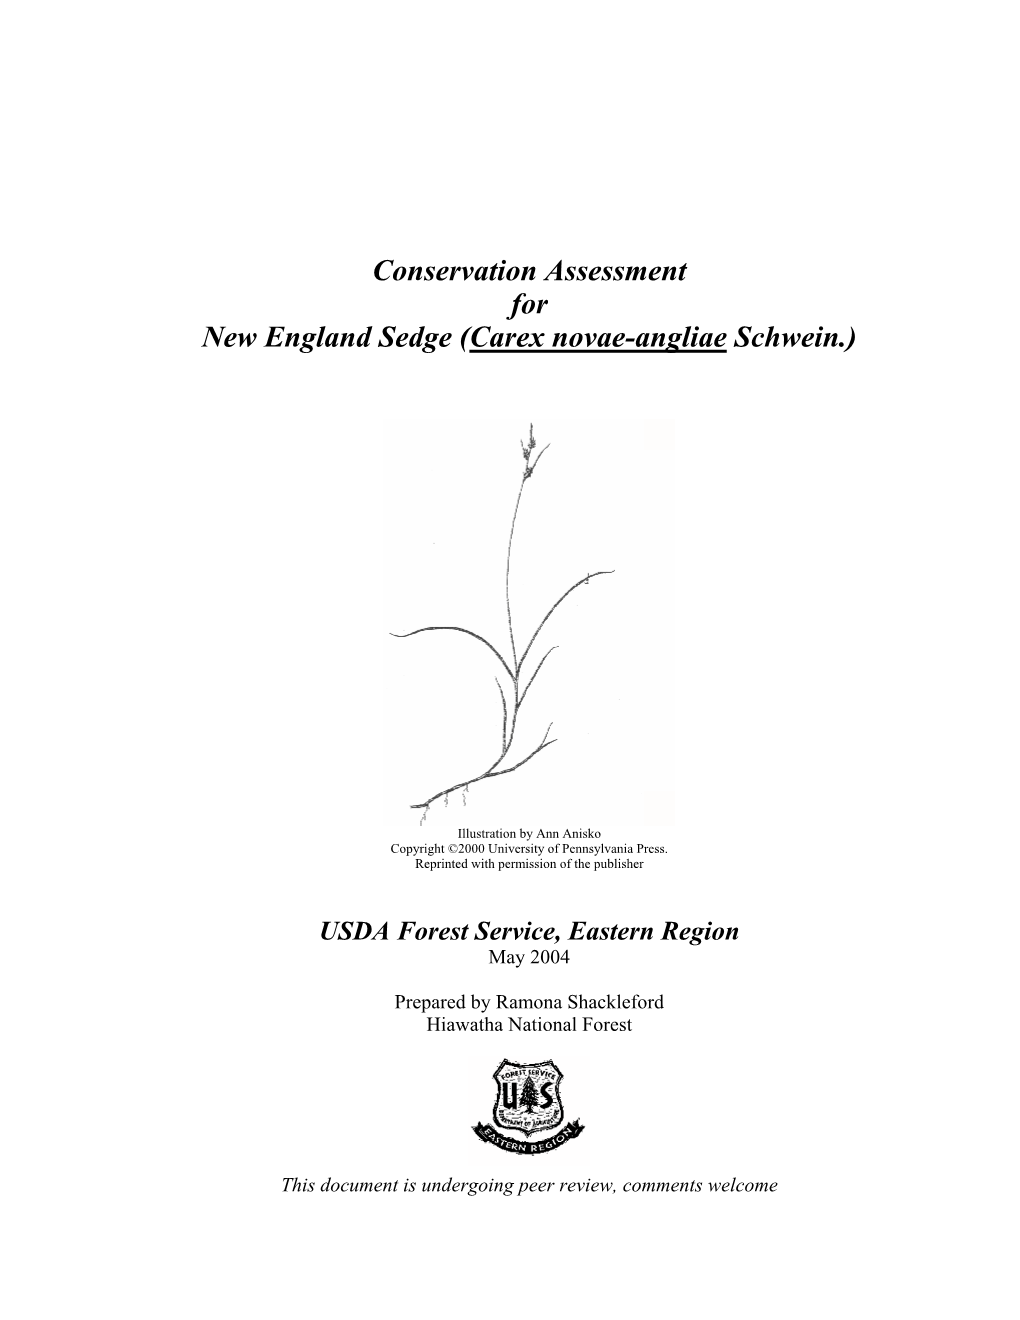 Conservation Assessment for New England Sedge (Carex Novae-Angliae Schwein.)